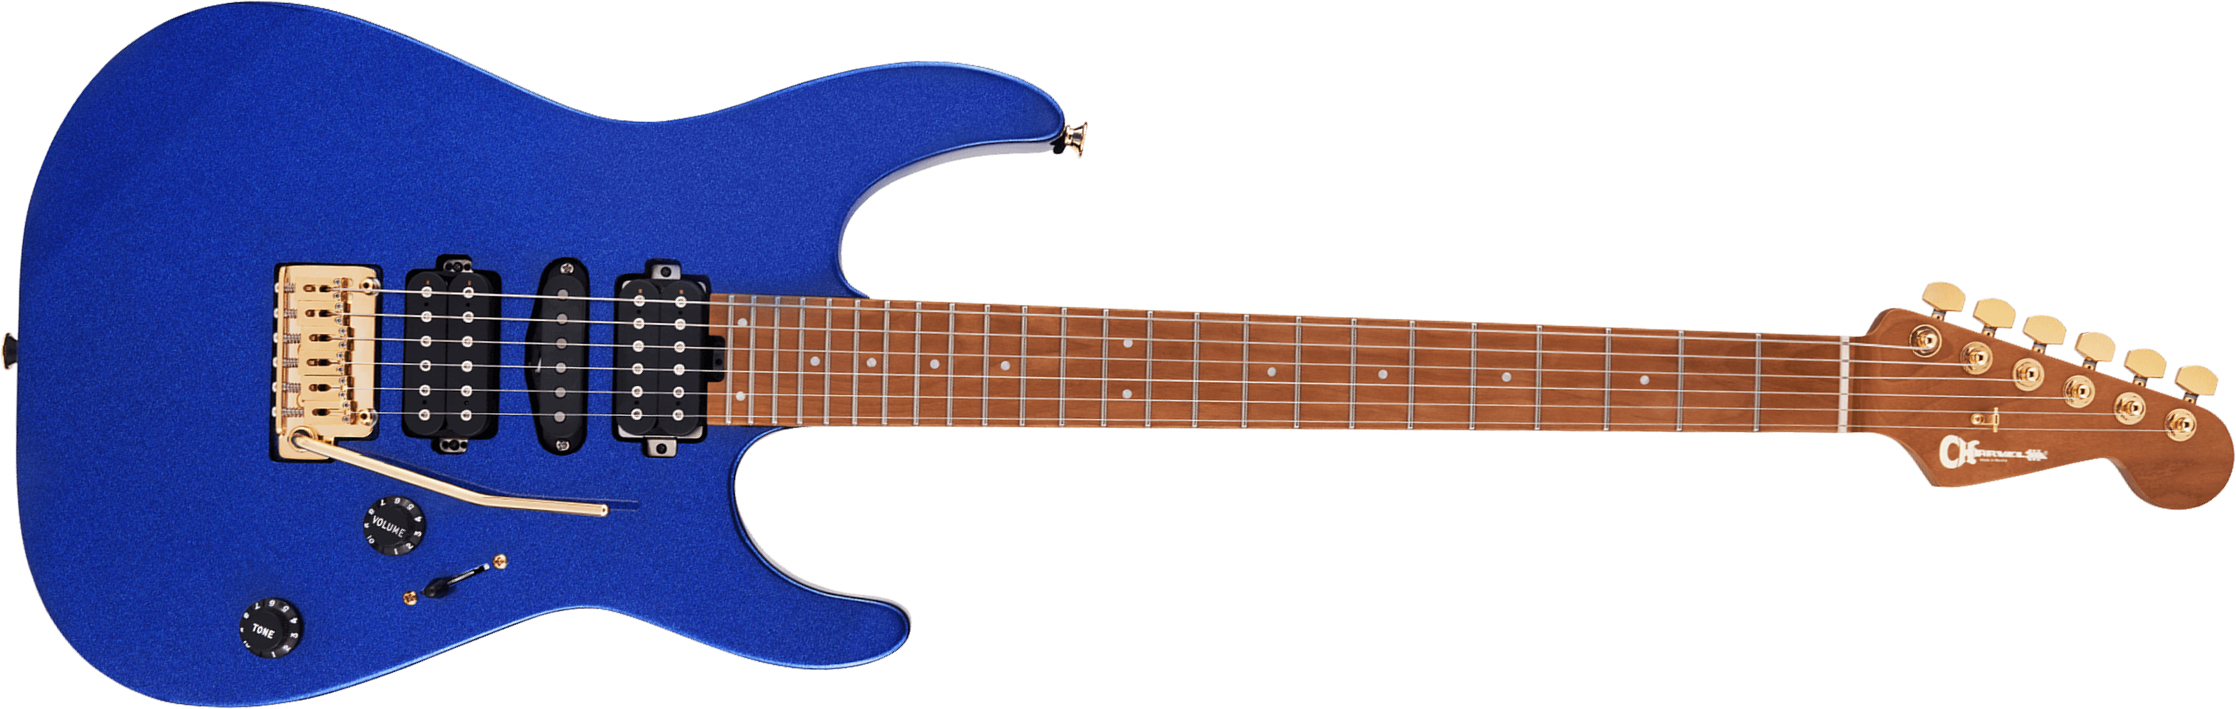 Charvel Dinky Dk24 Hsh 2pt Cm Pro-mod Seymour Duncan Trem Mn - Mystic Blue - Guitare Électrique Forme Str - Main picture